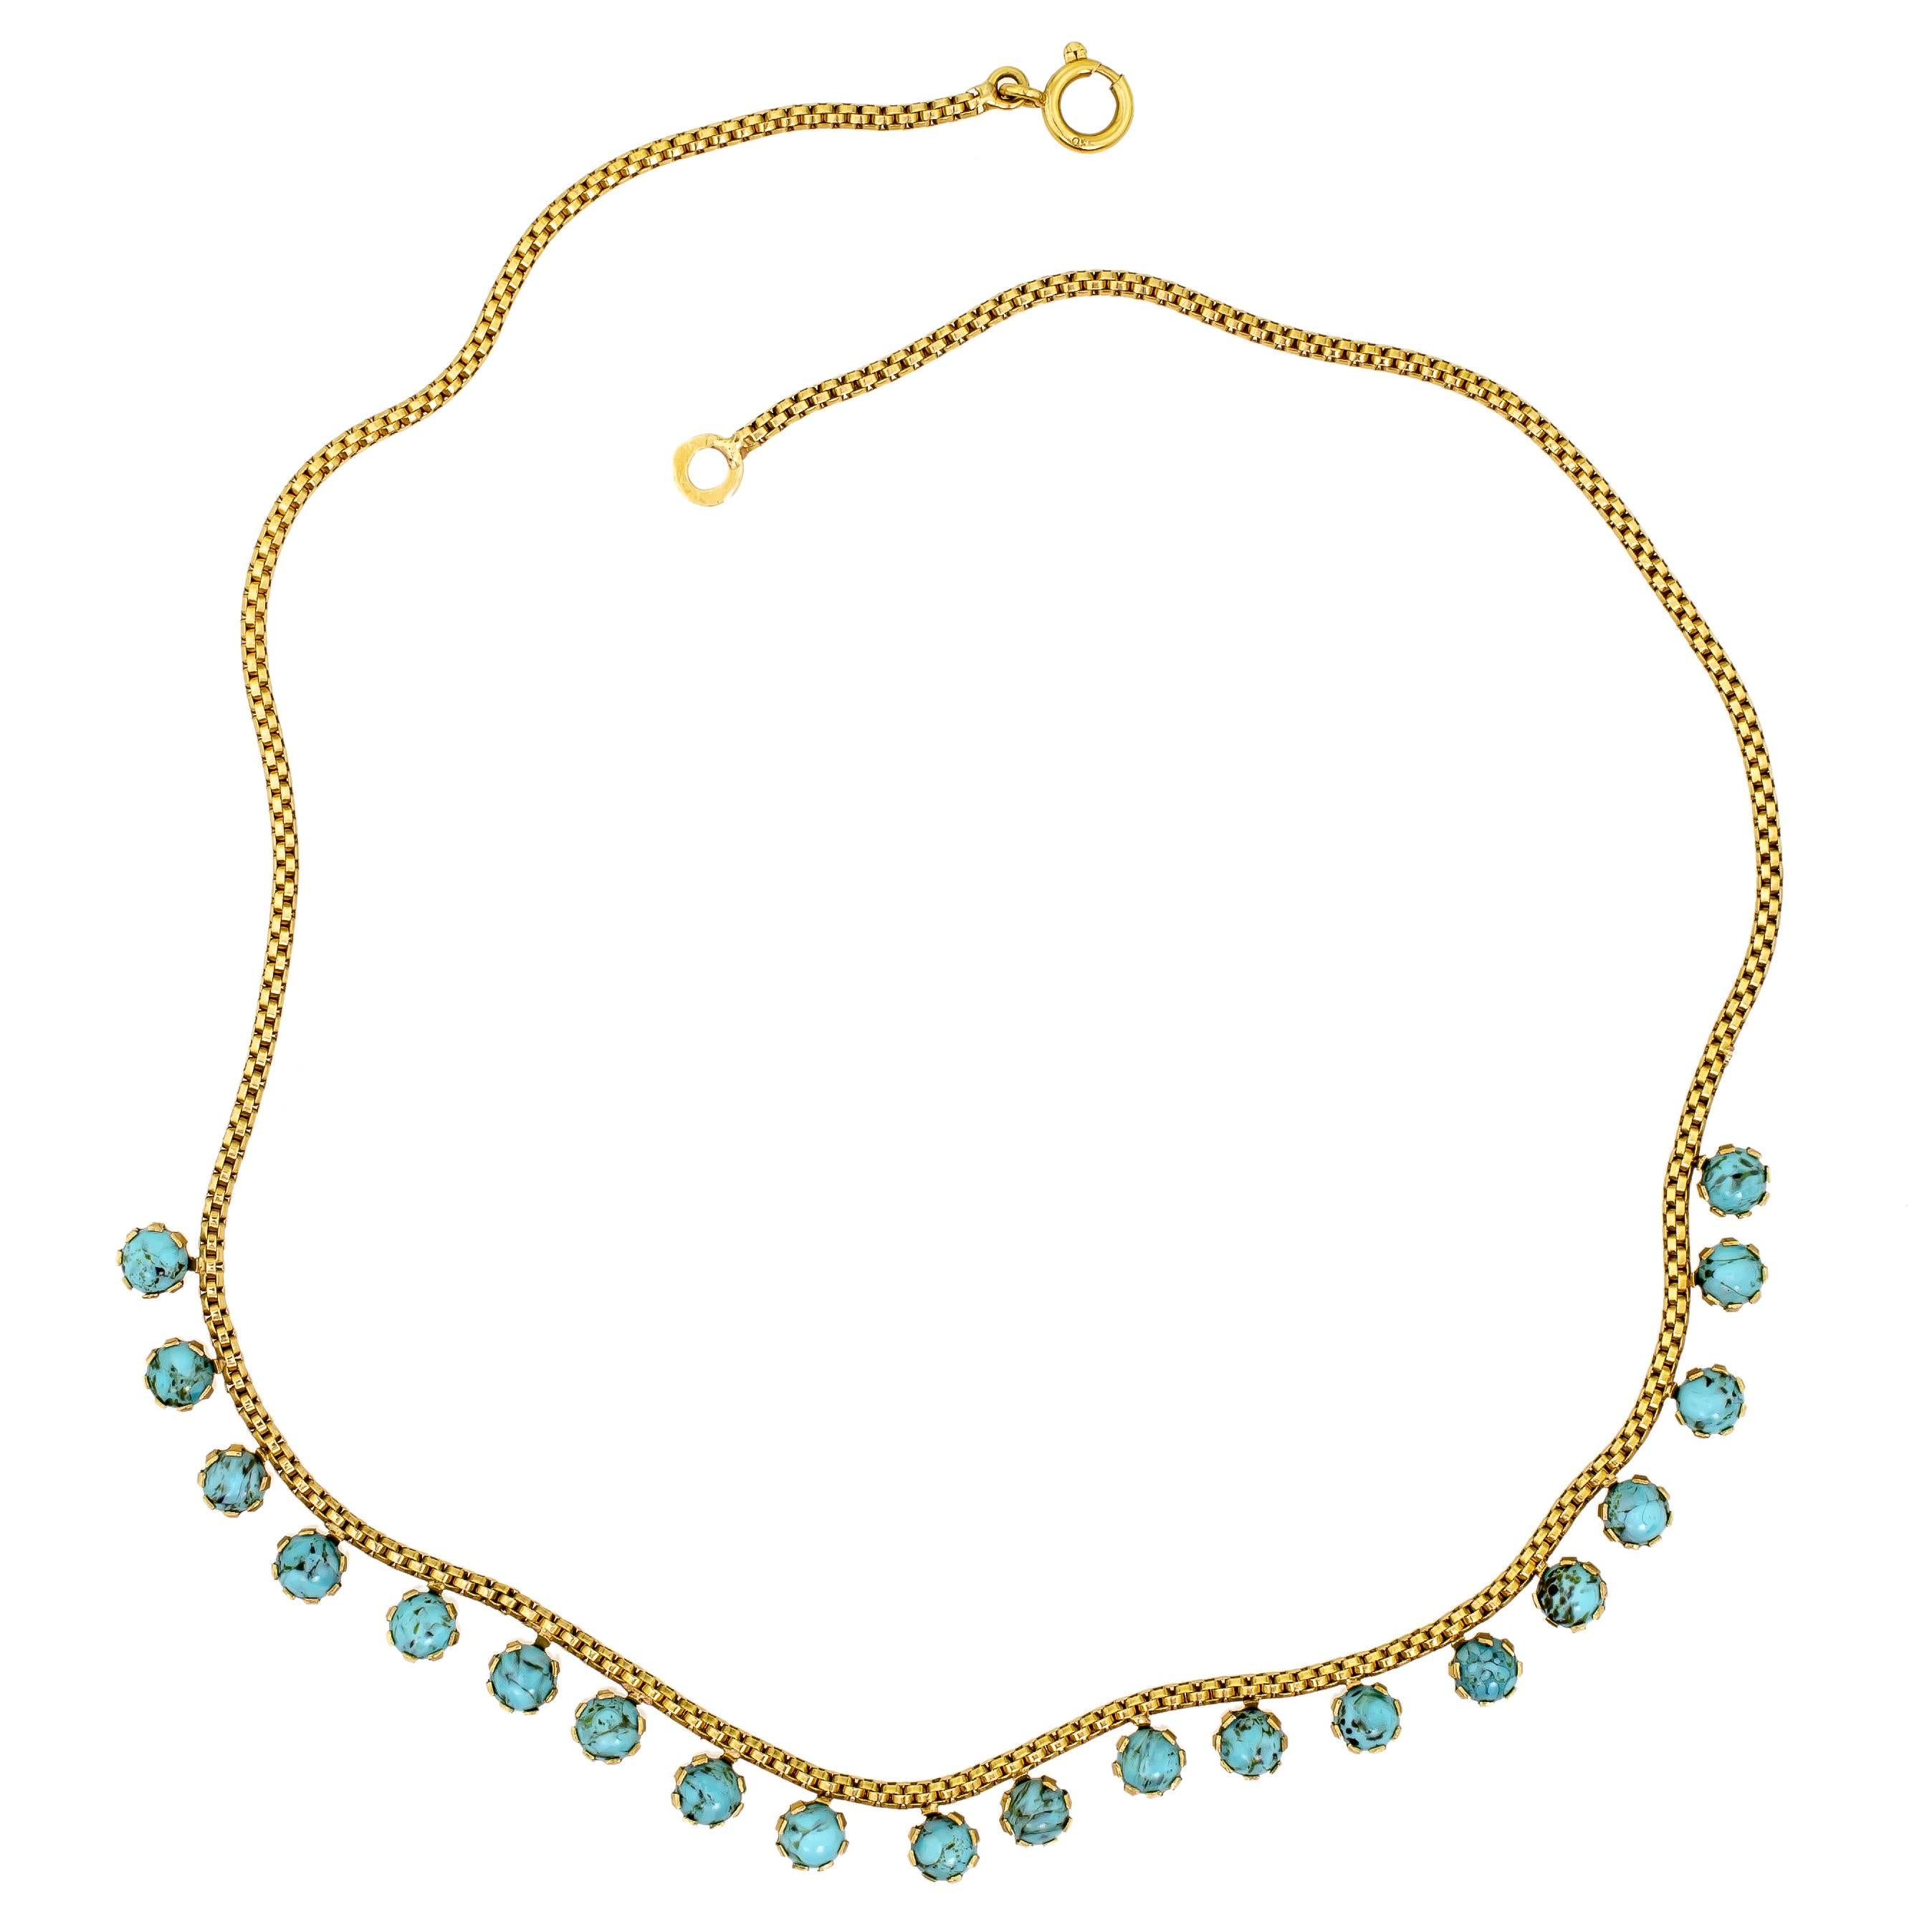 Edwardian Wonderful Turn of the Century Antique Turquoise and 18 Karat Gold Necklace